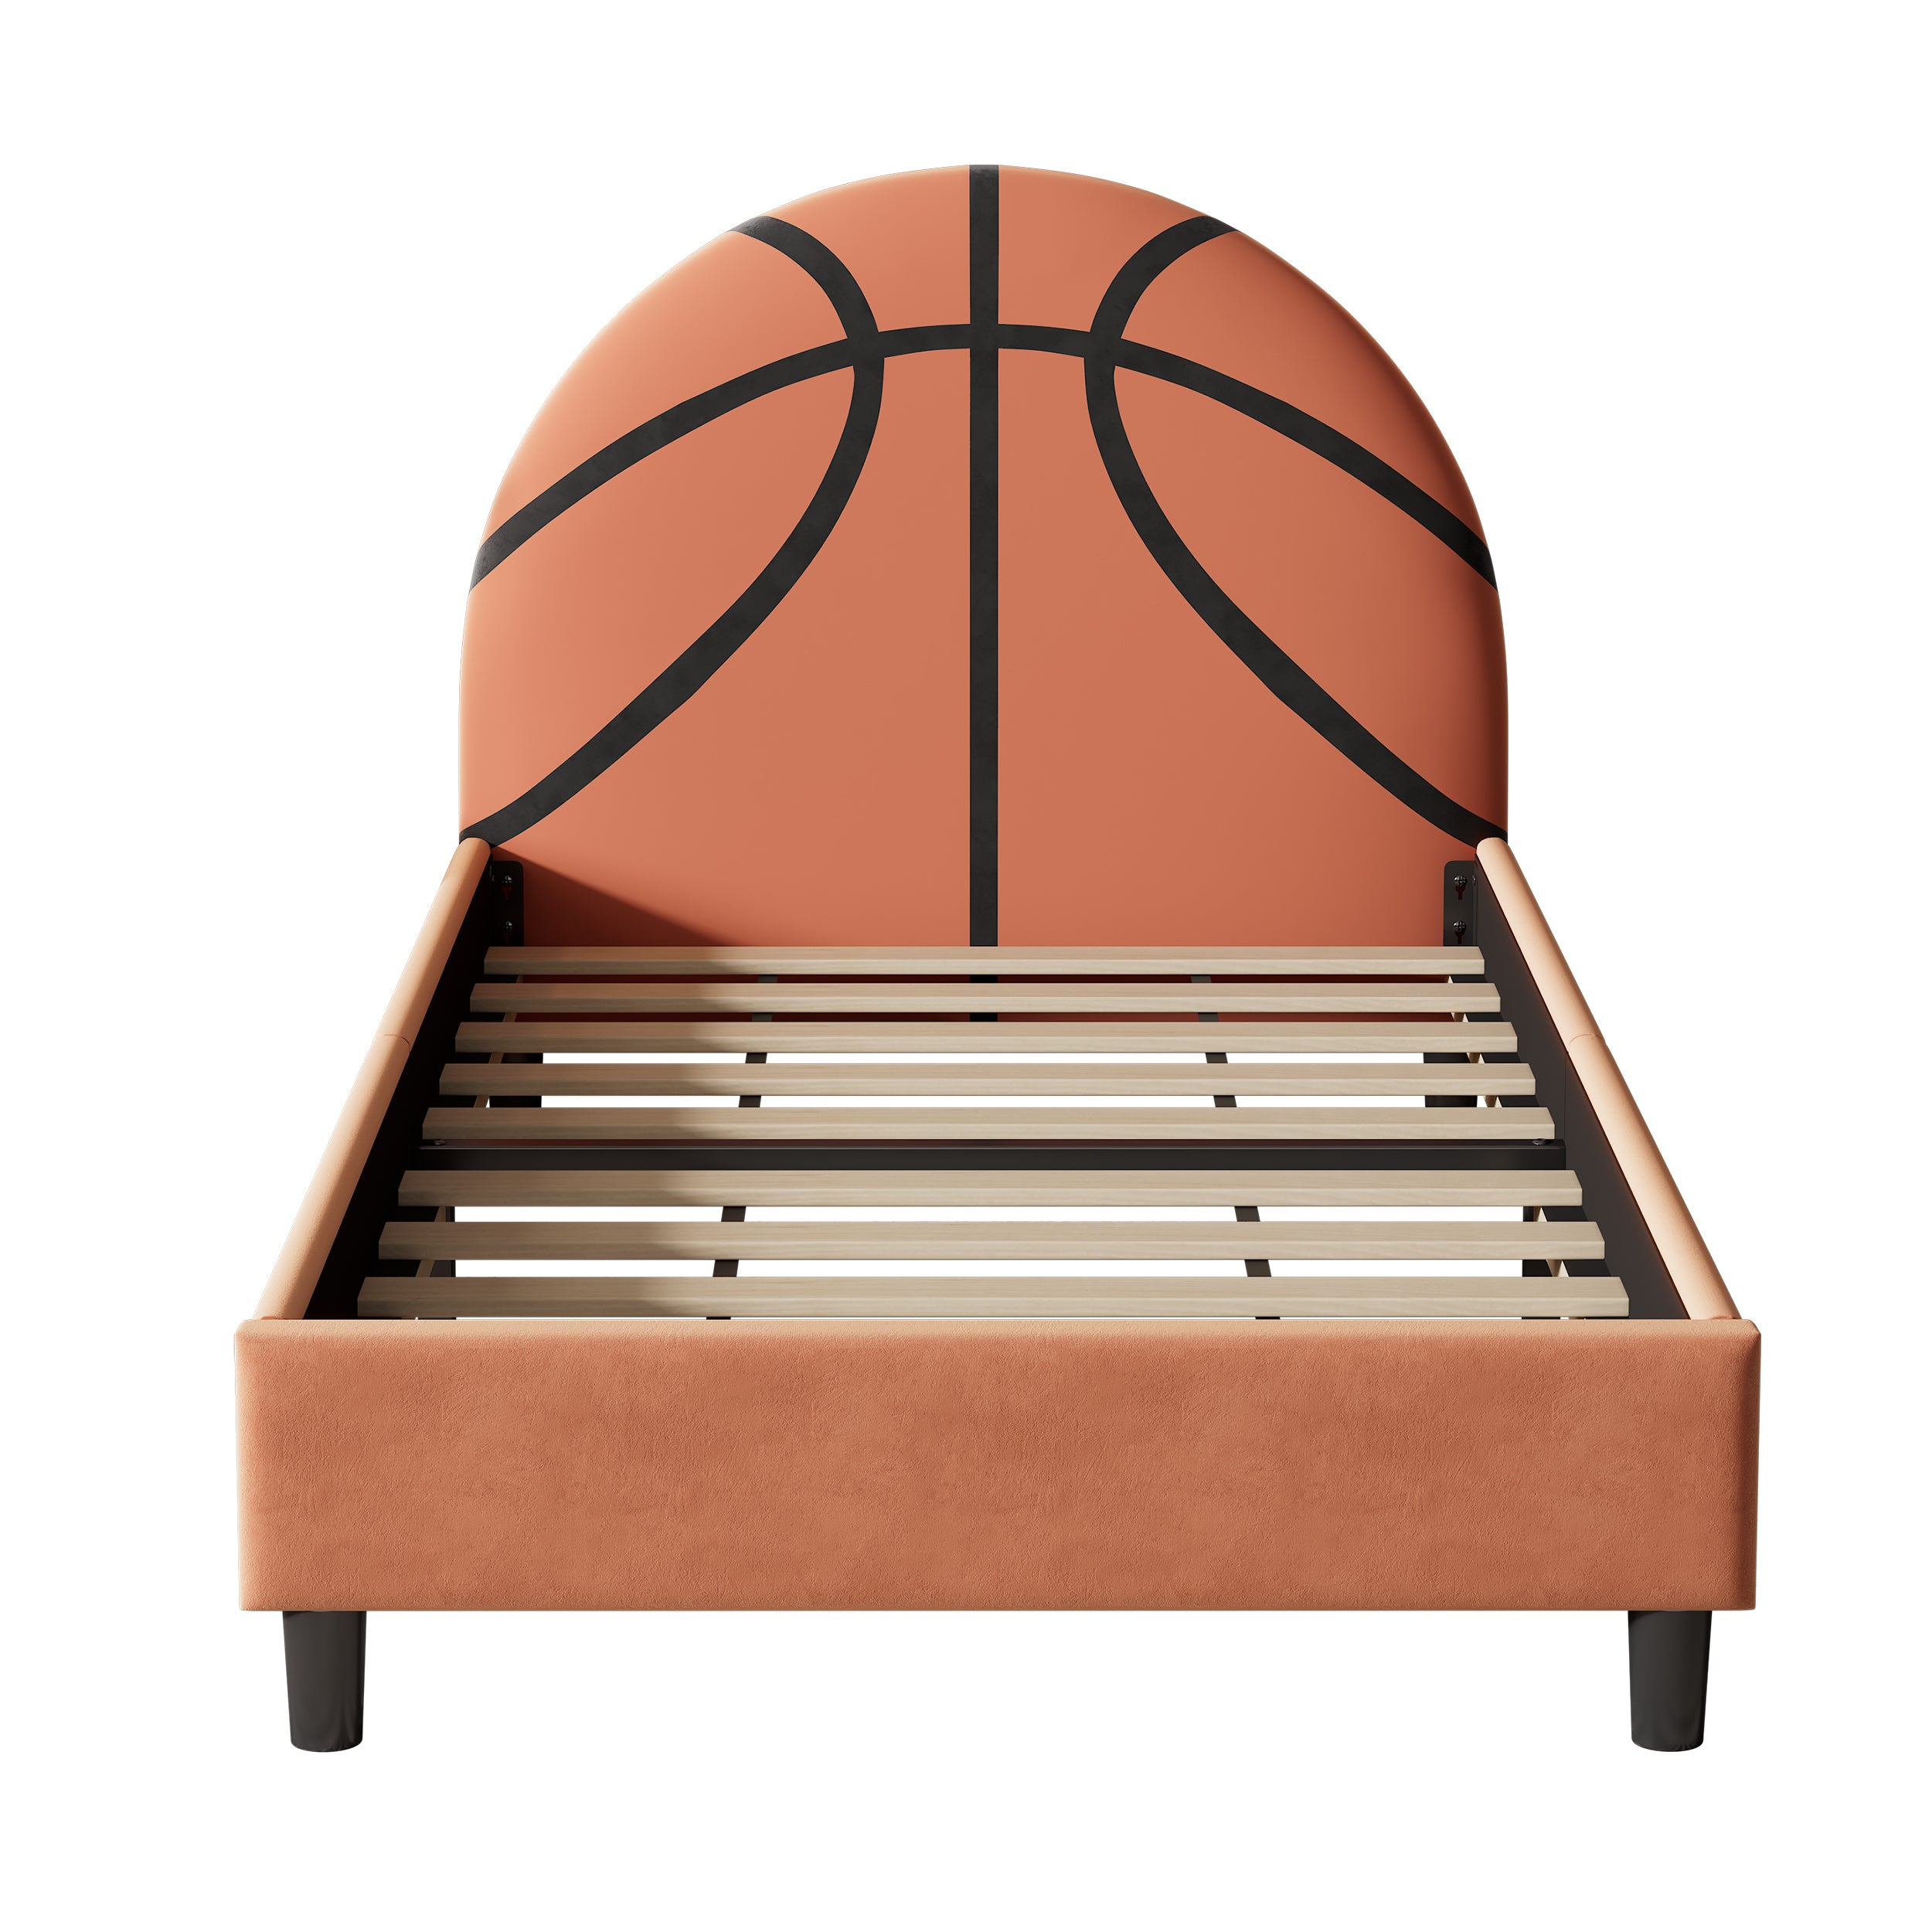 Basketball Design Upholstered Twin Platform Bed